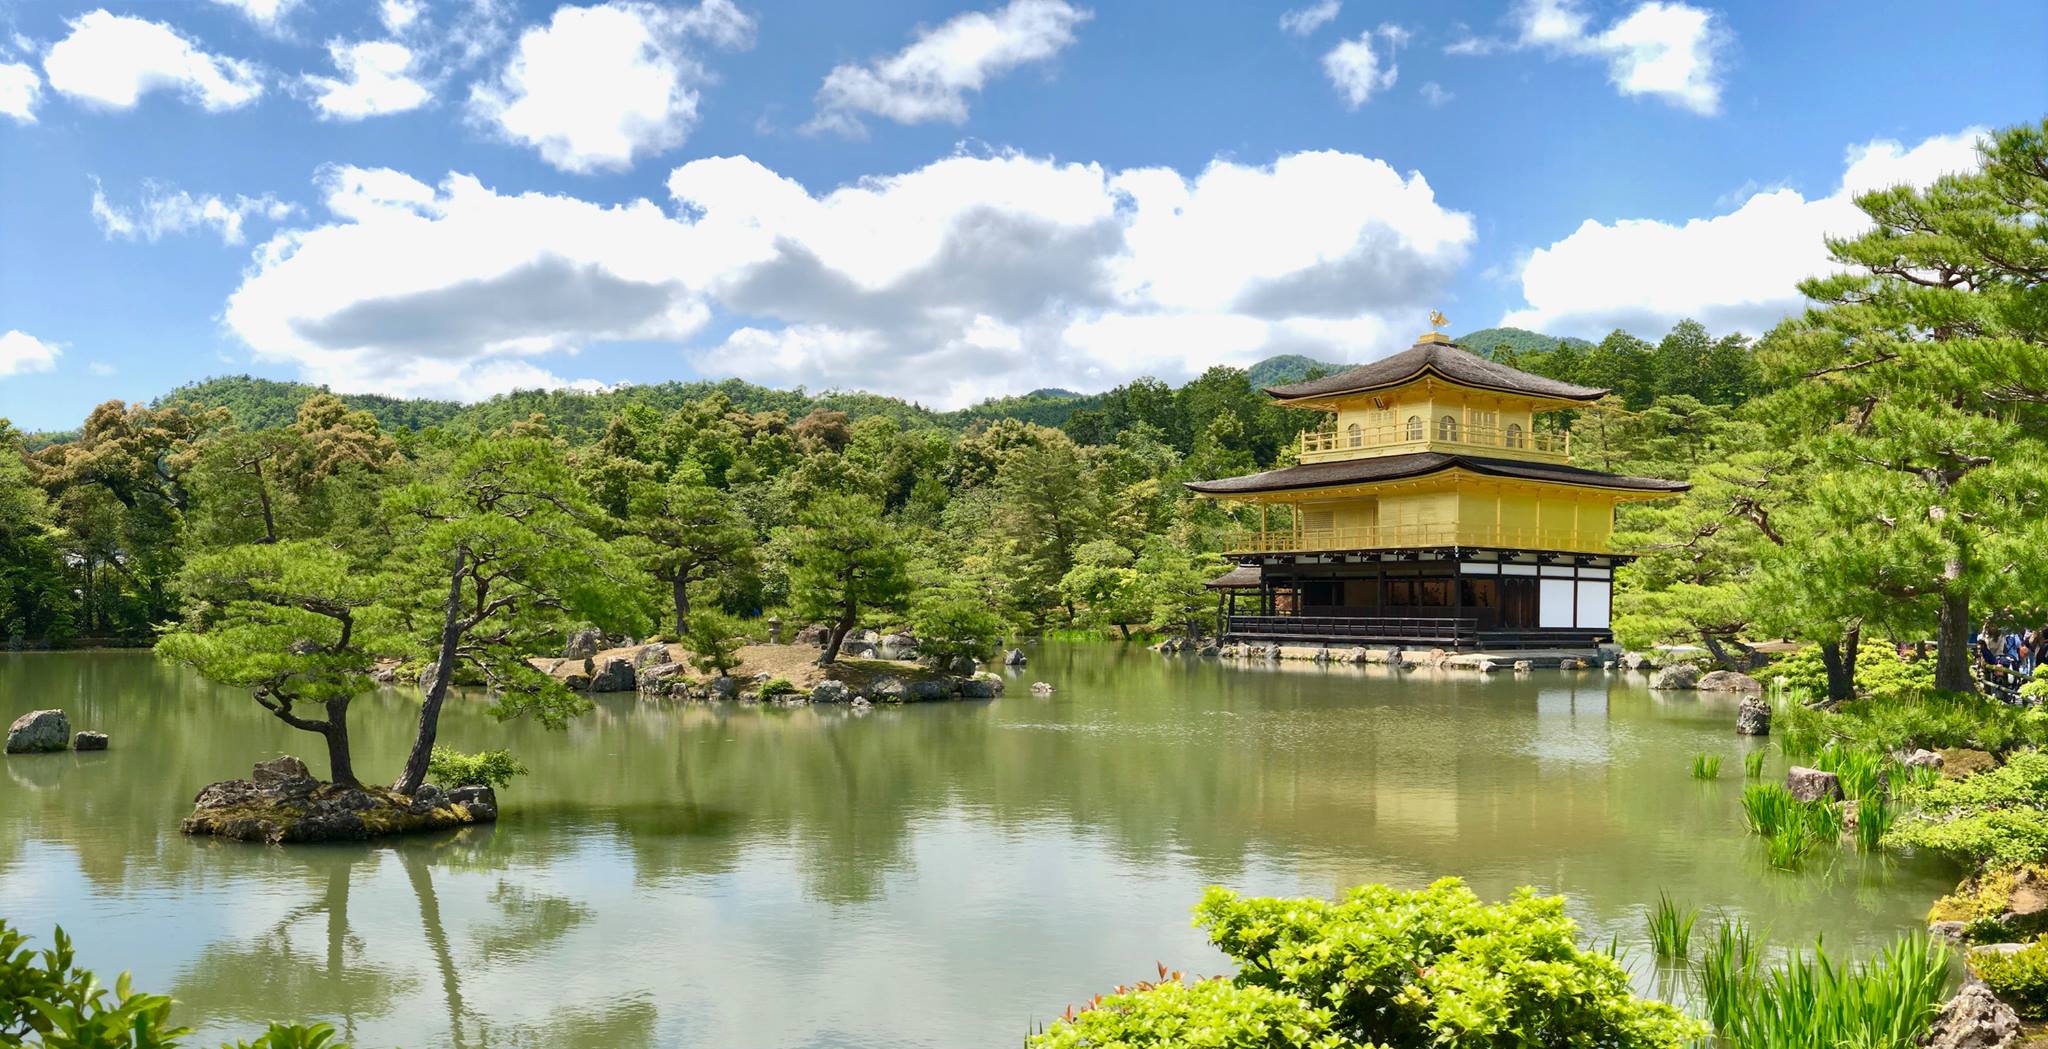 Kinkaku-ji (chùa gác vàng, gọi tắt là chùa vàng).